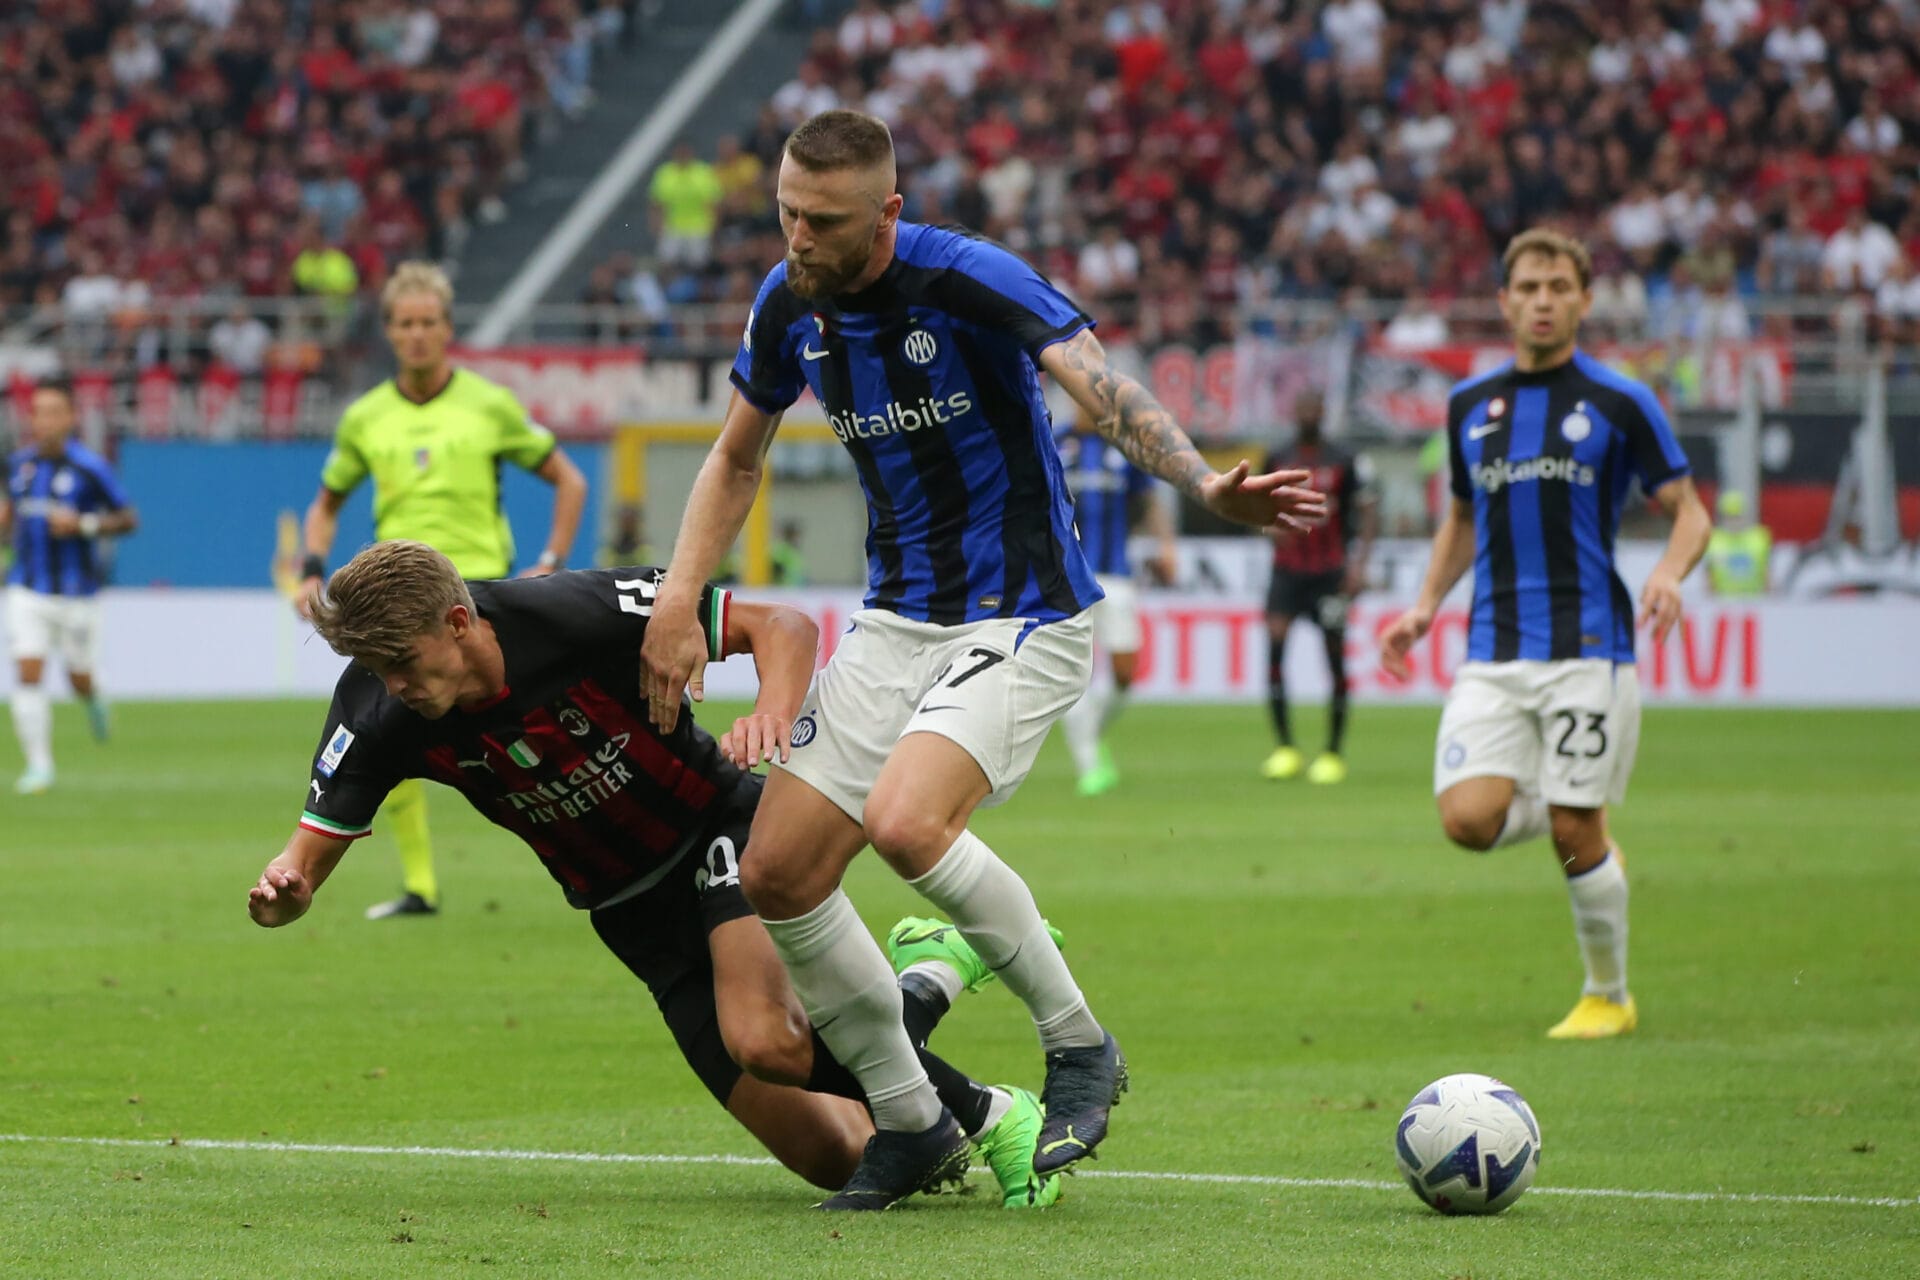 Inter-Torino: i nerazzurri cercano la vittoria per dimenticare il derby